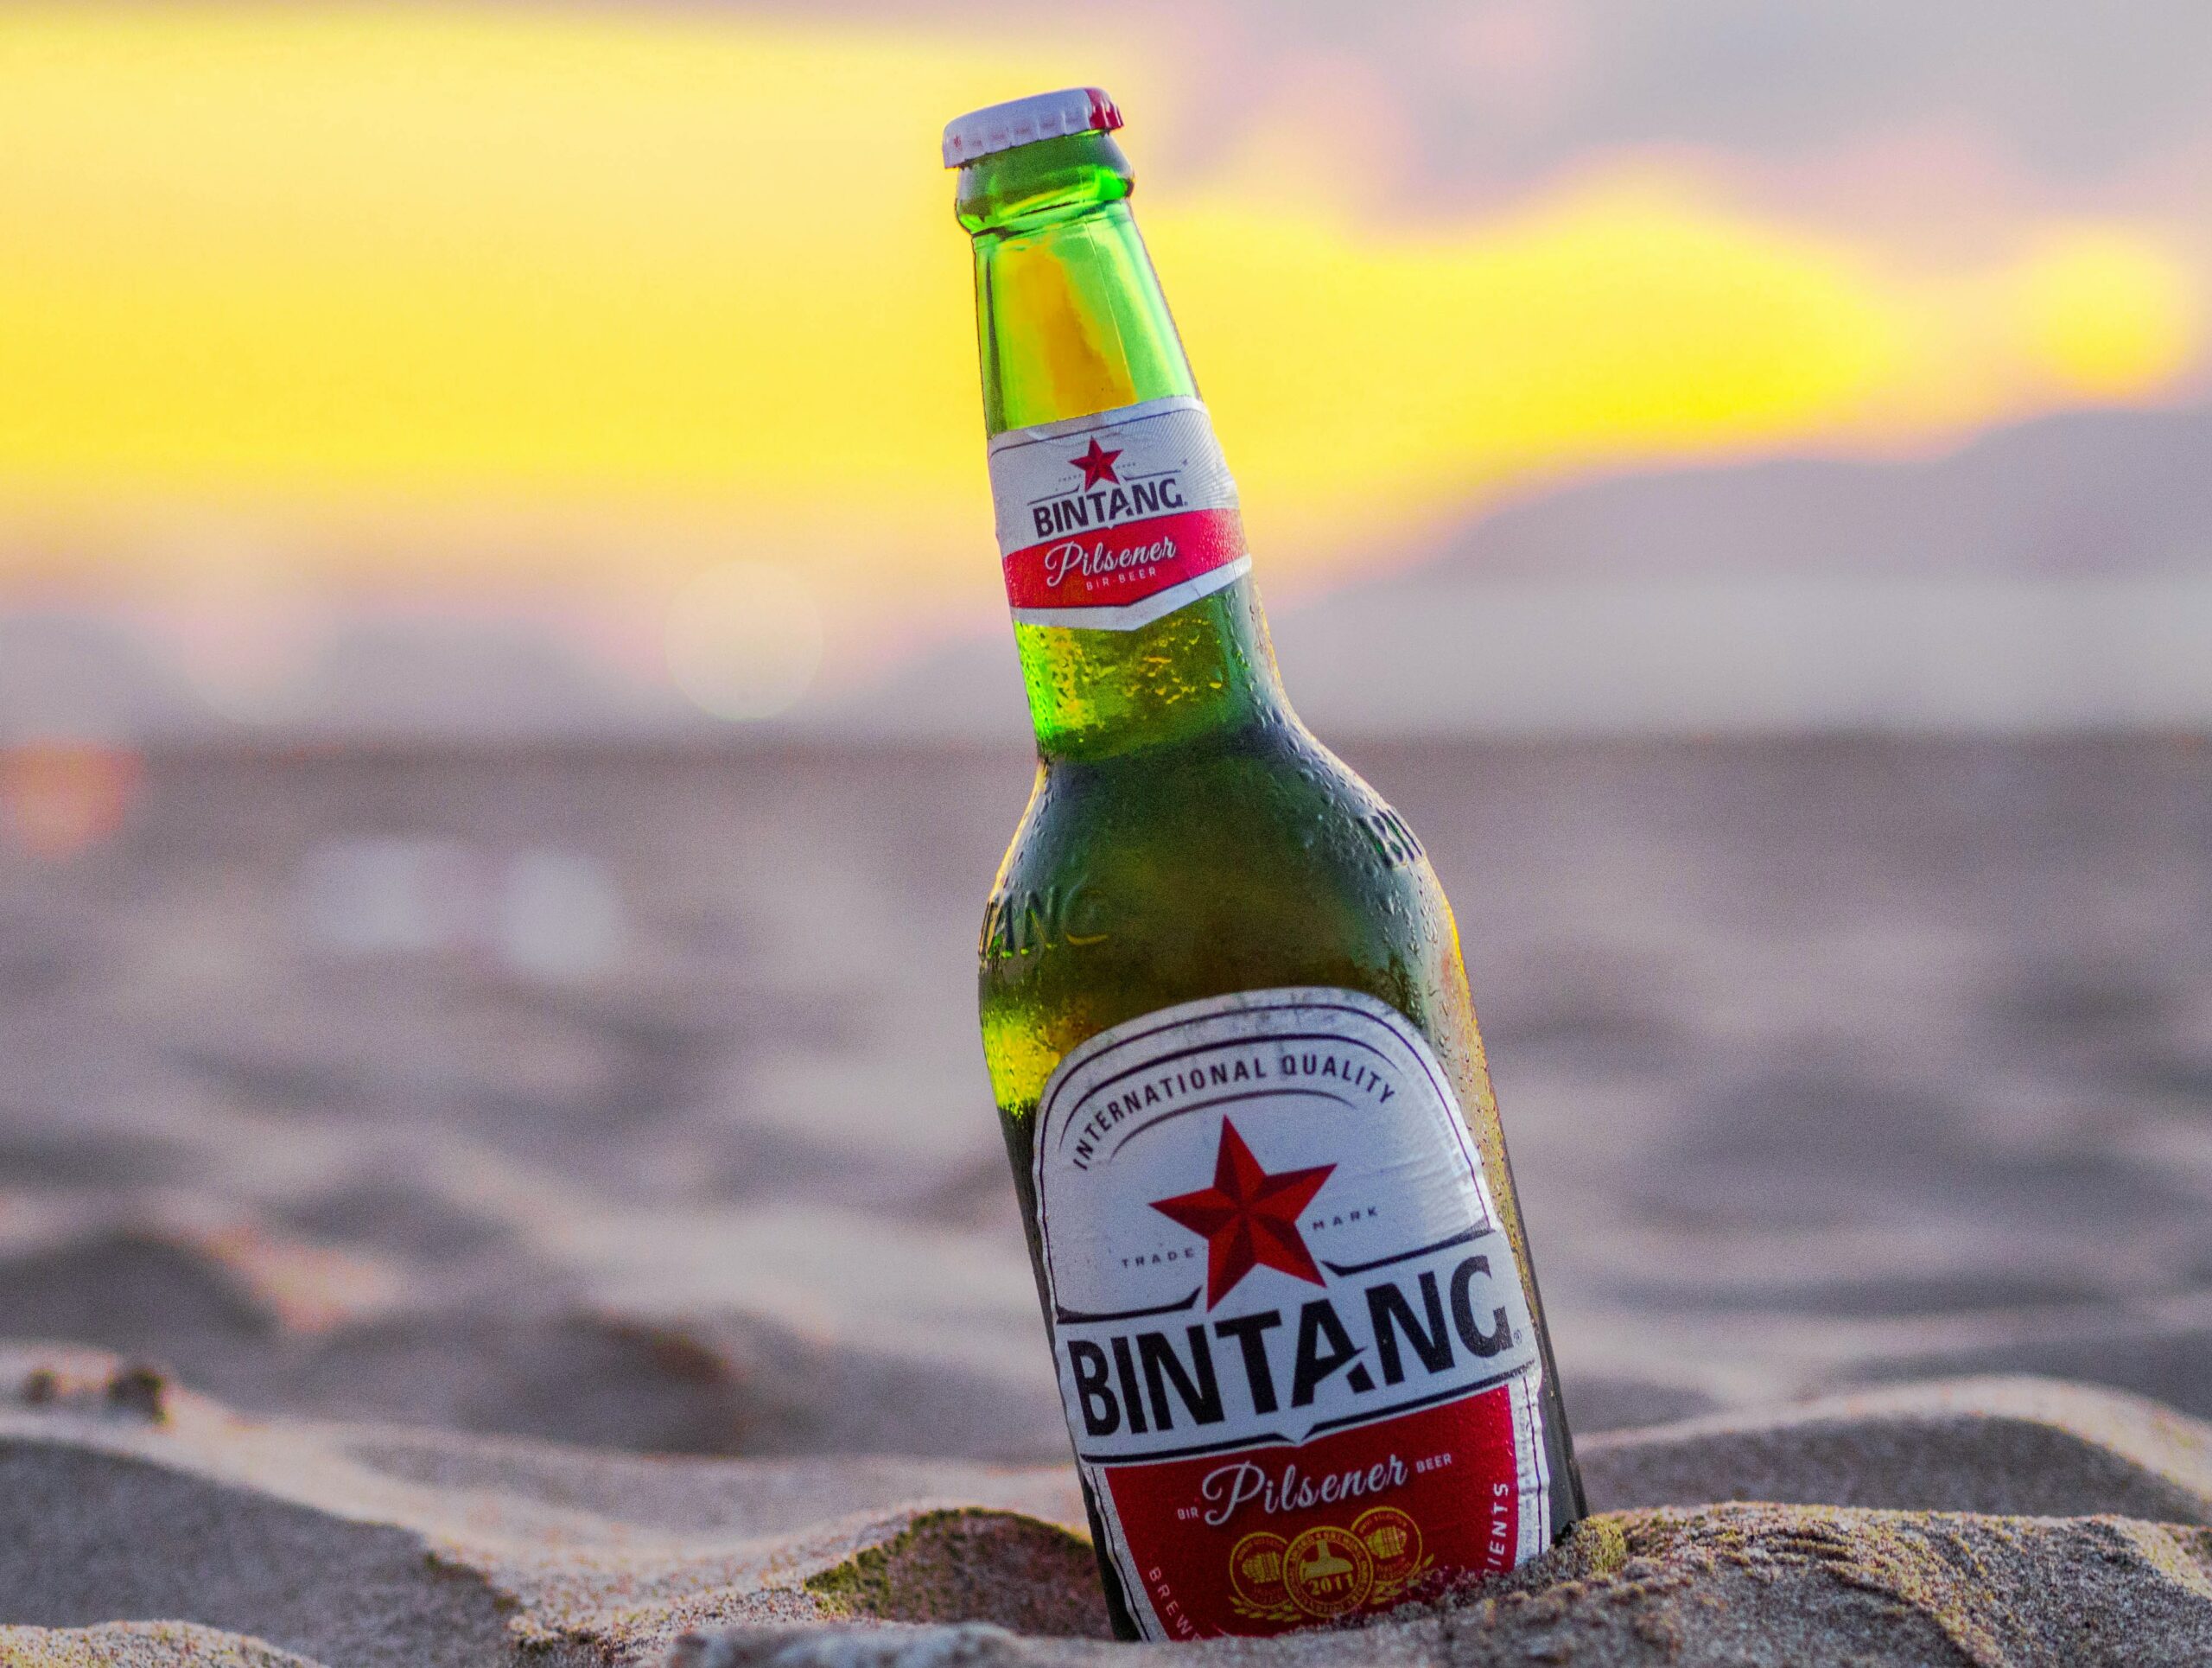 Bottle of Bintang beer on the beach.